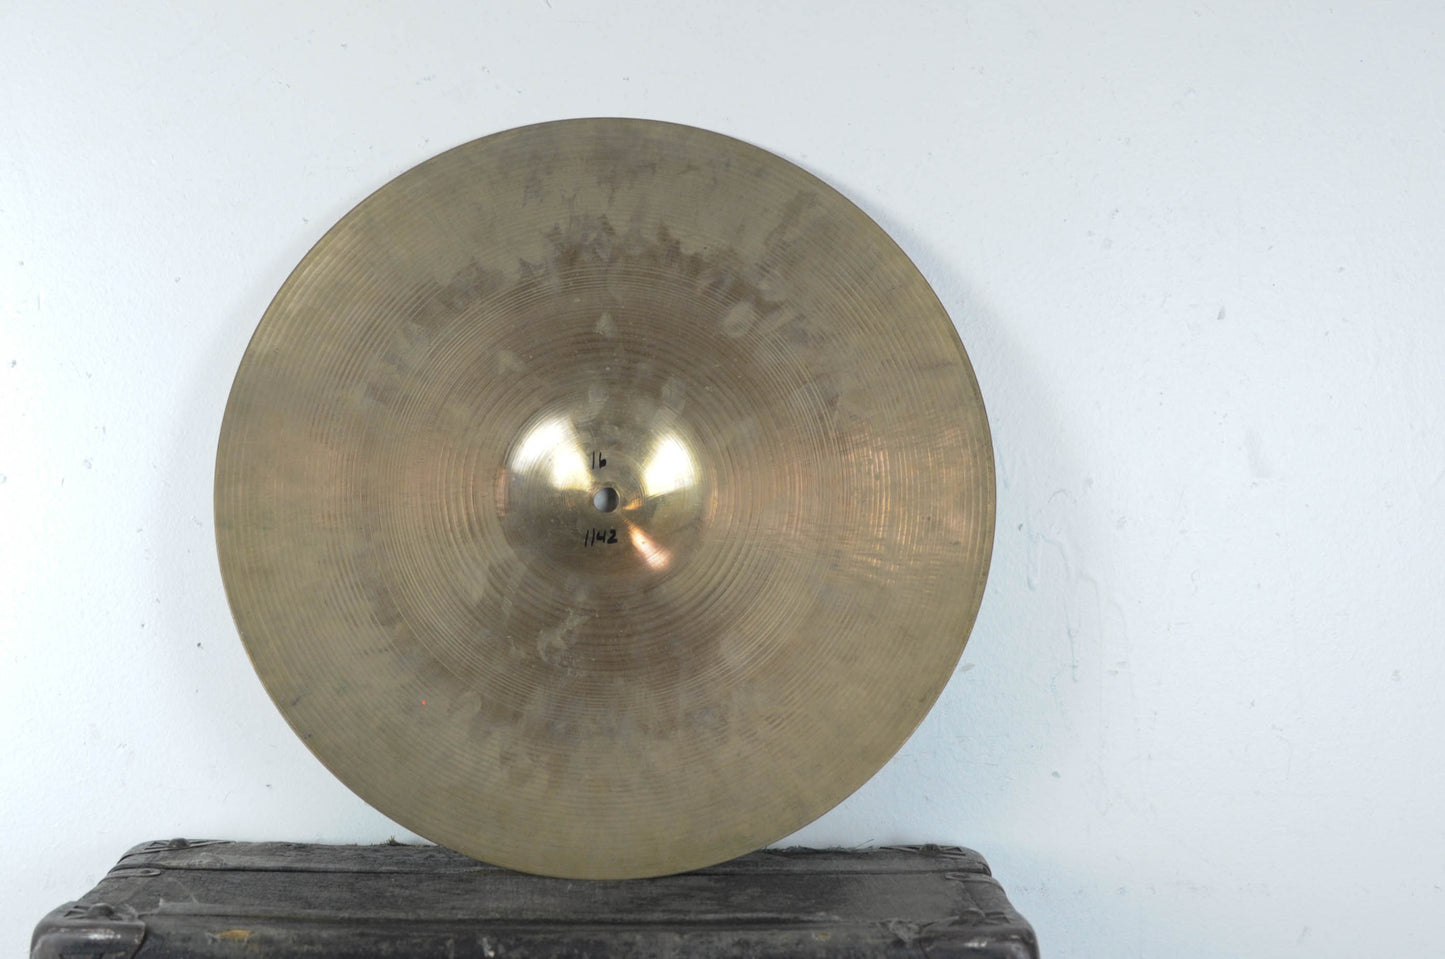 1960s Zildjian A 16" Crash Cymbal 1142g